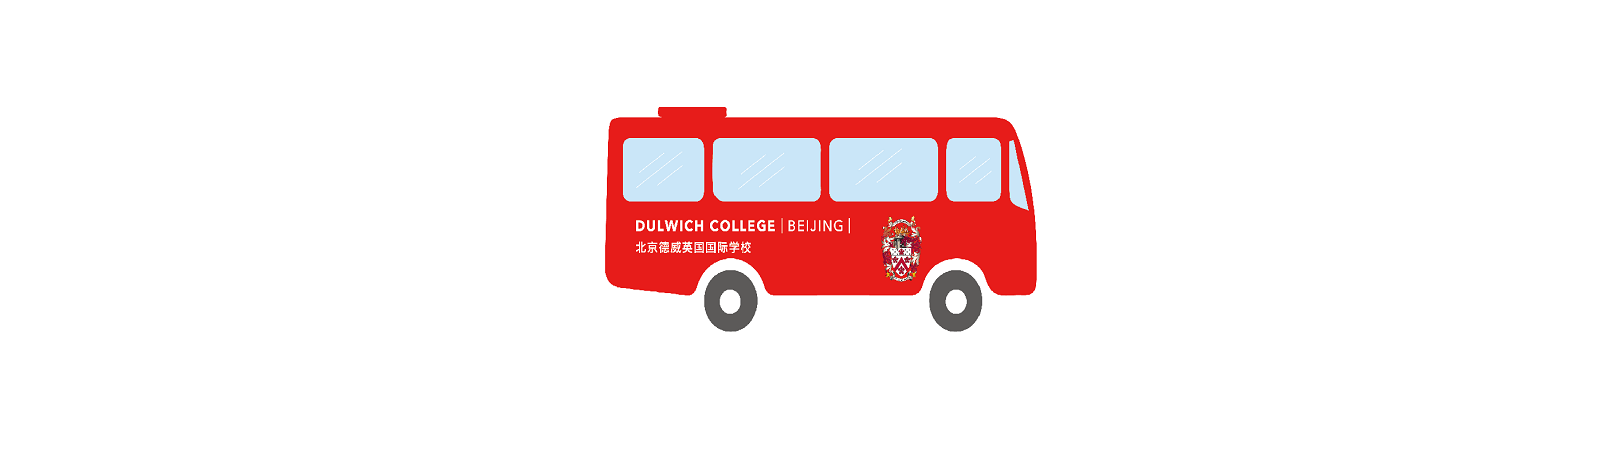 DCB school bus